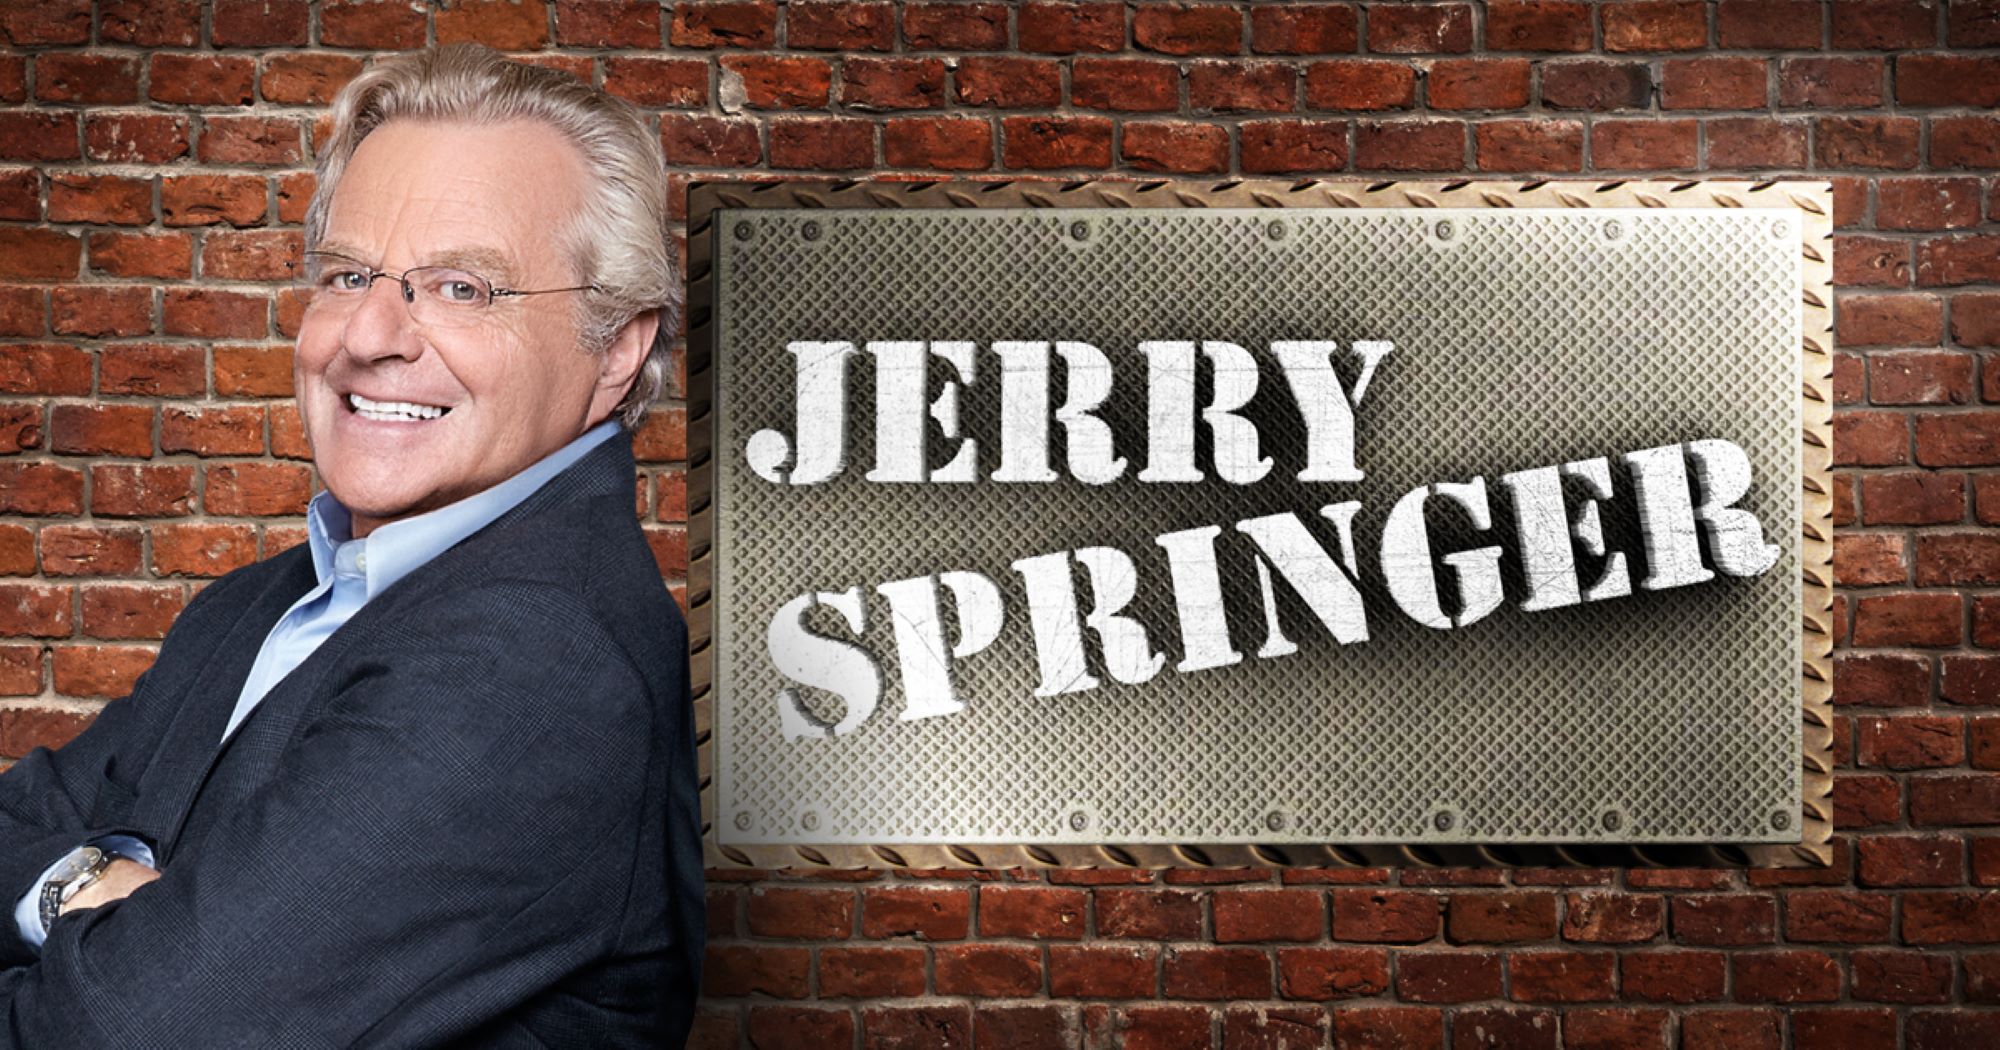 Muere Jerry Springer, mítico presentador de televisión en Estados Unidos, a los 79 años